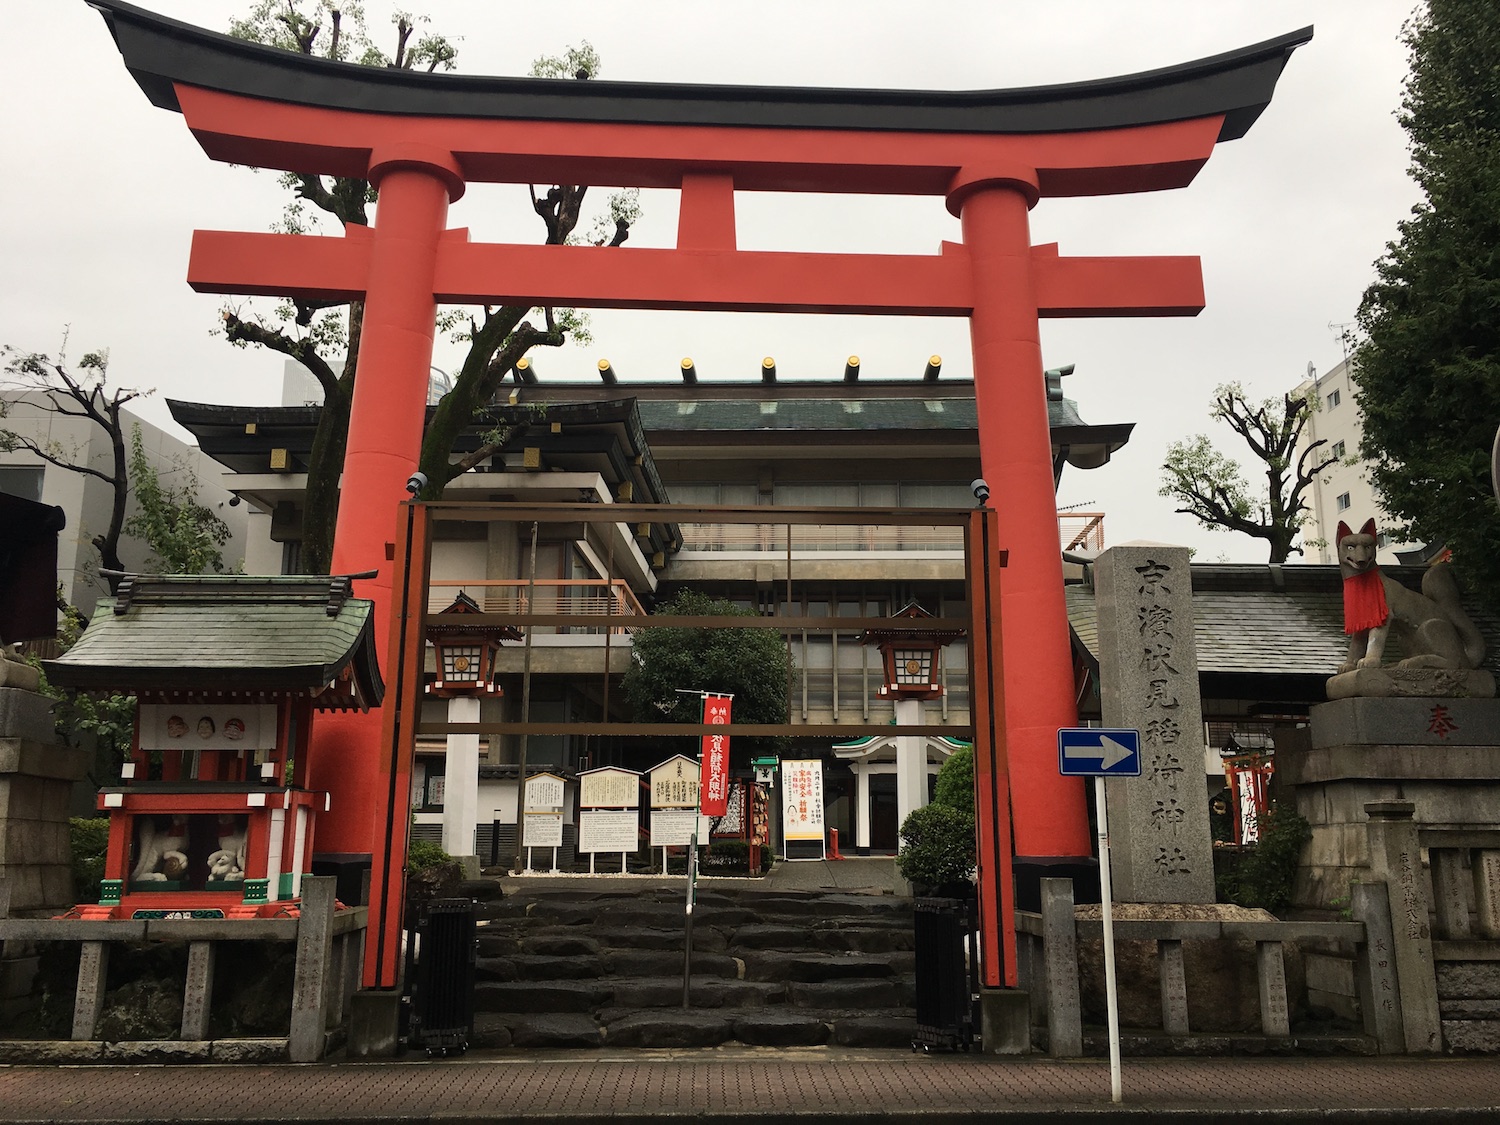 大きな鳥居が特徴の京浜稲荷神社（神奈川）。